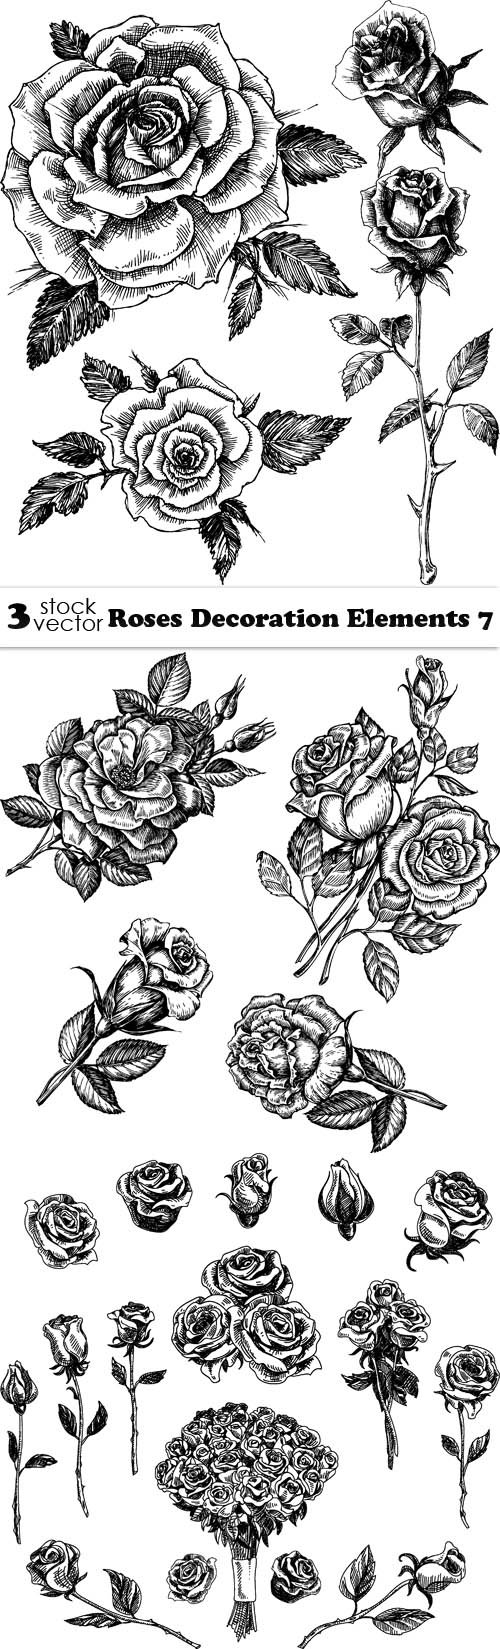 Vectors - Roses Decoration Elements 7